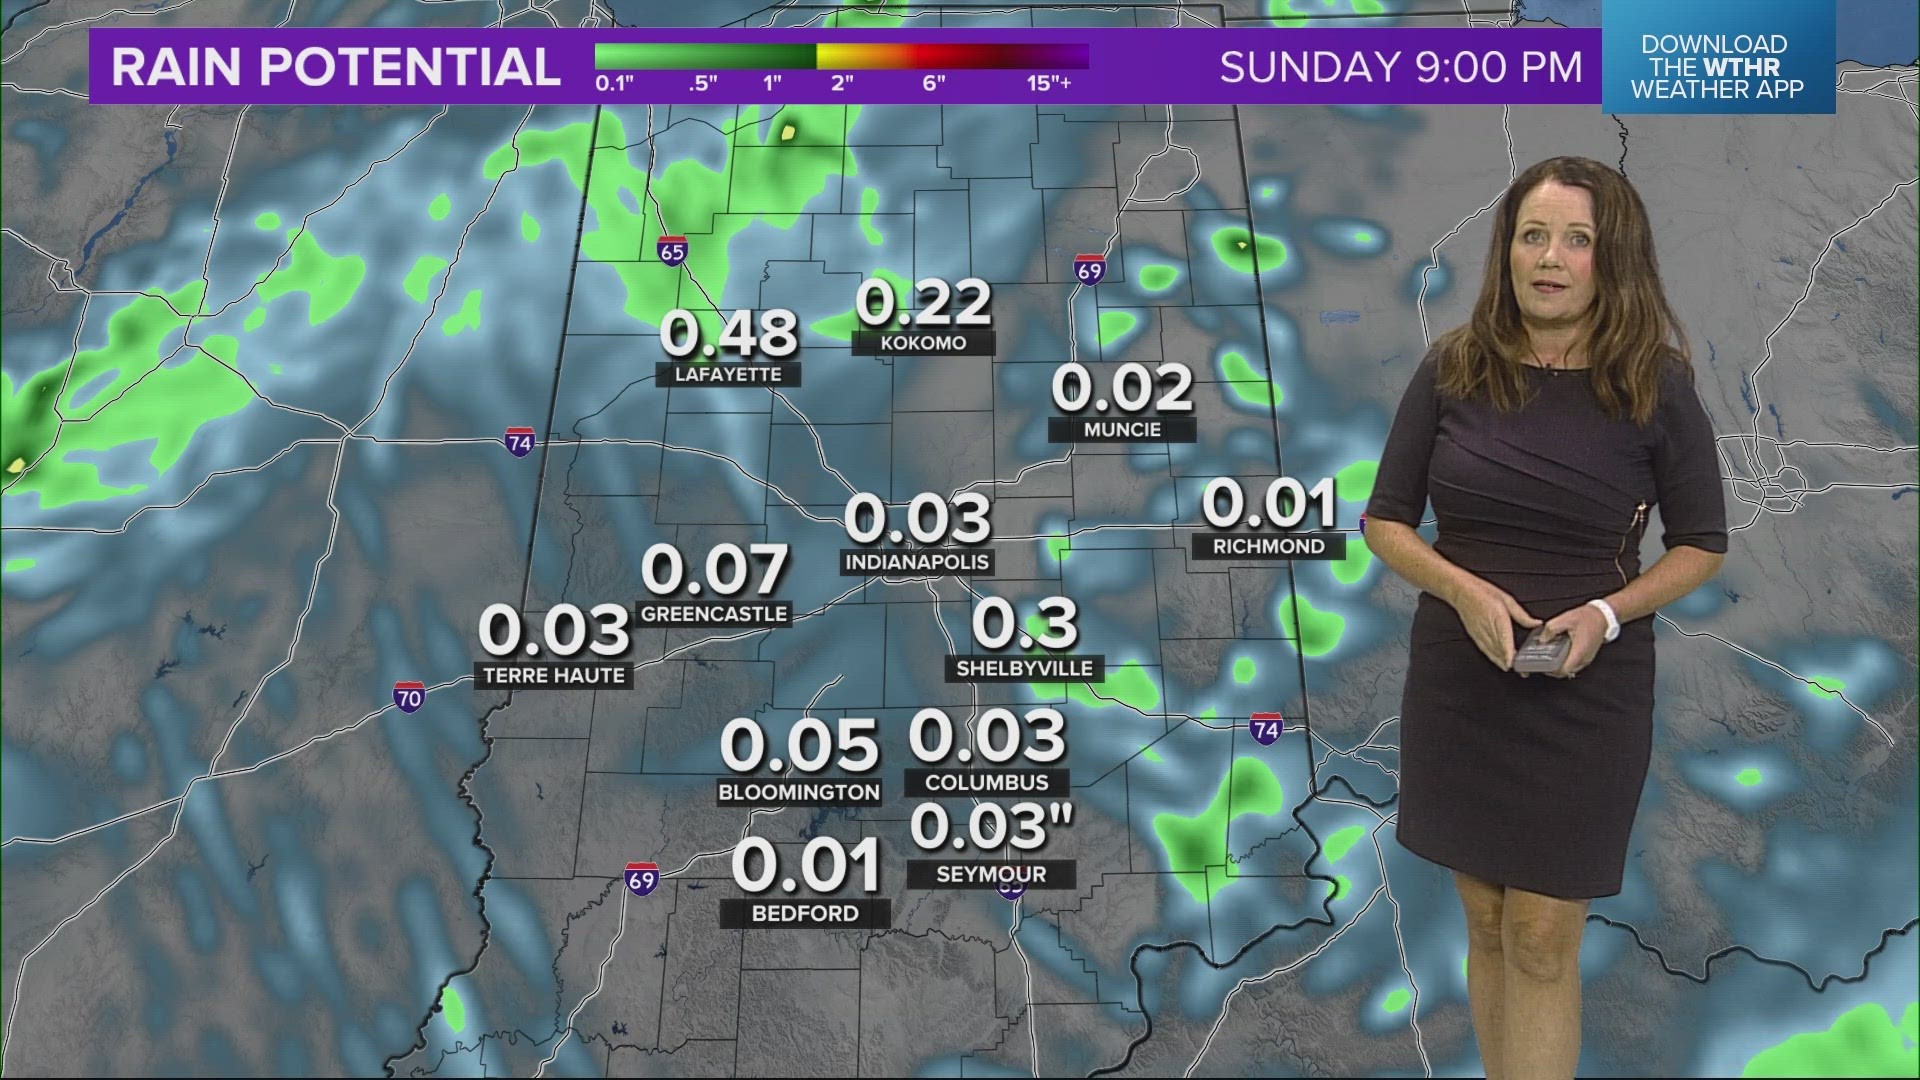 13News meteorologist Kelly Greene looks ahead at Sunday's forecast.